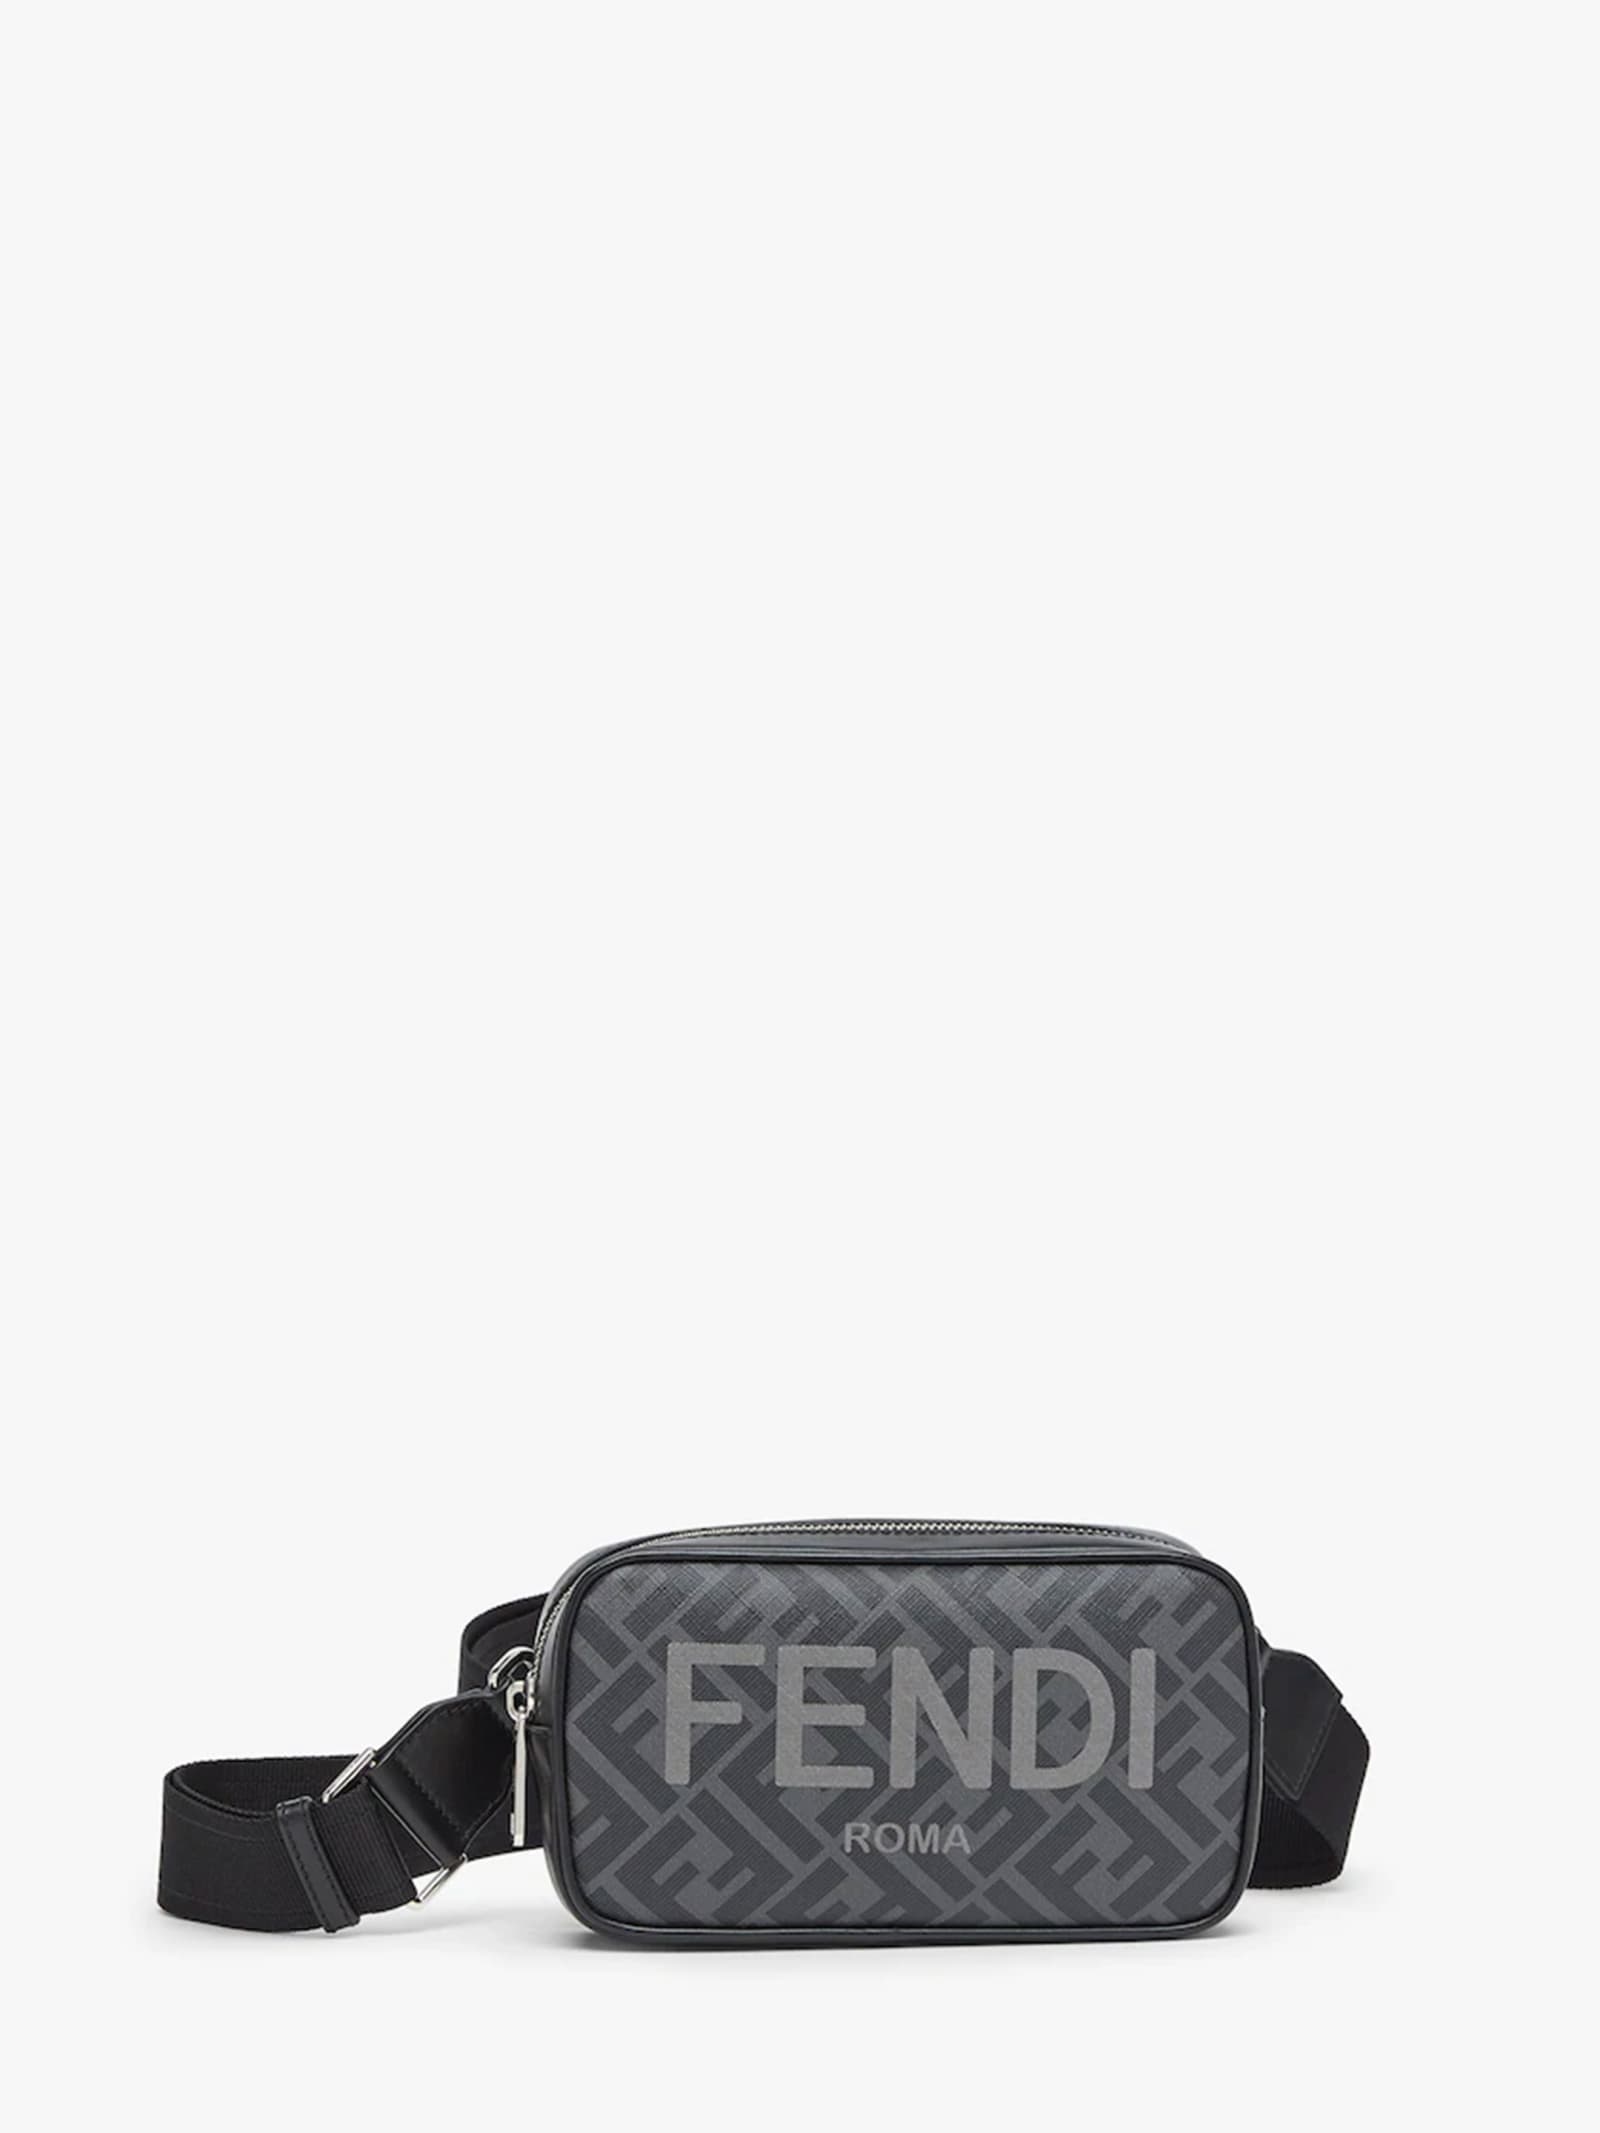 Fendi Small Camera Case Bag